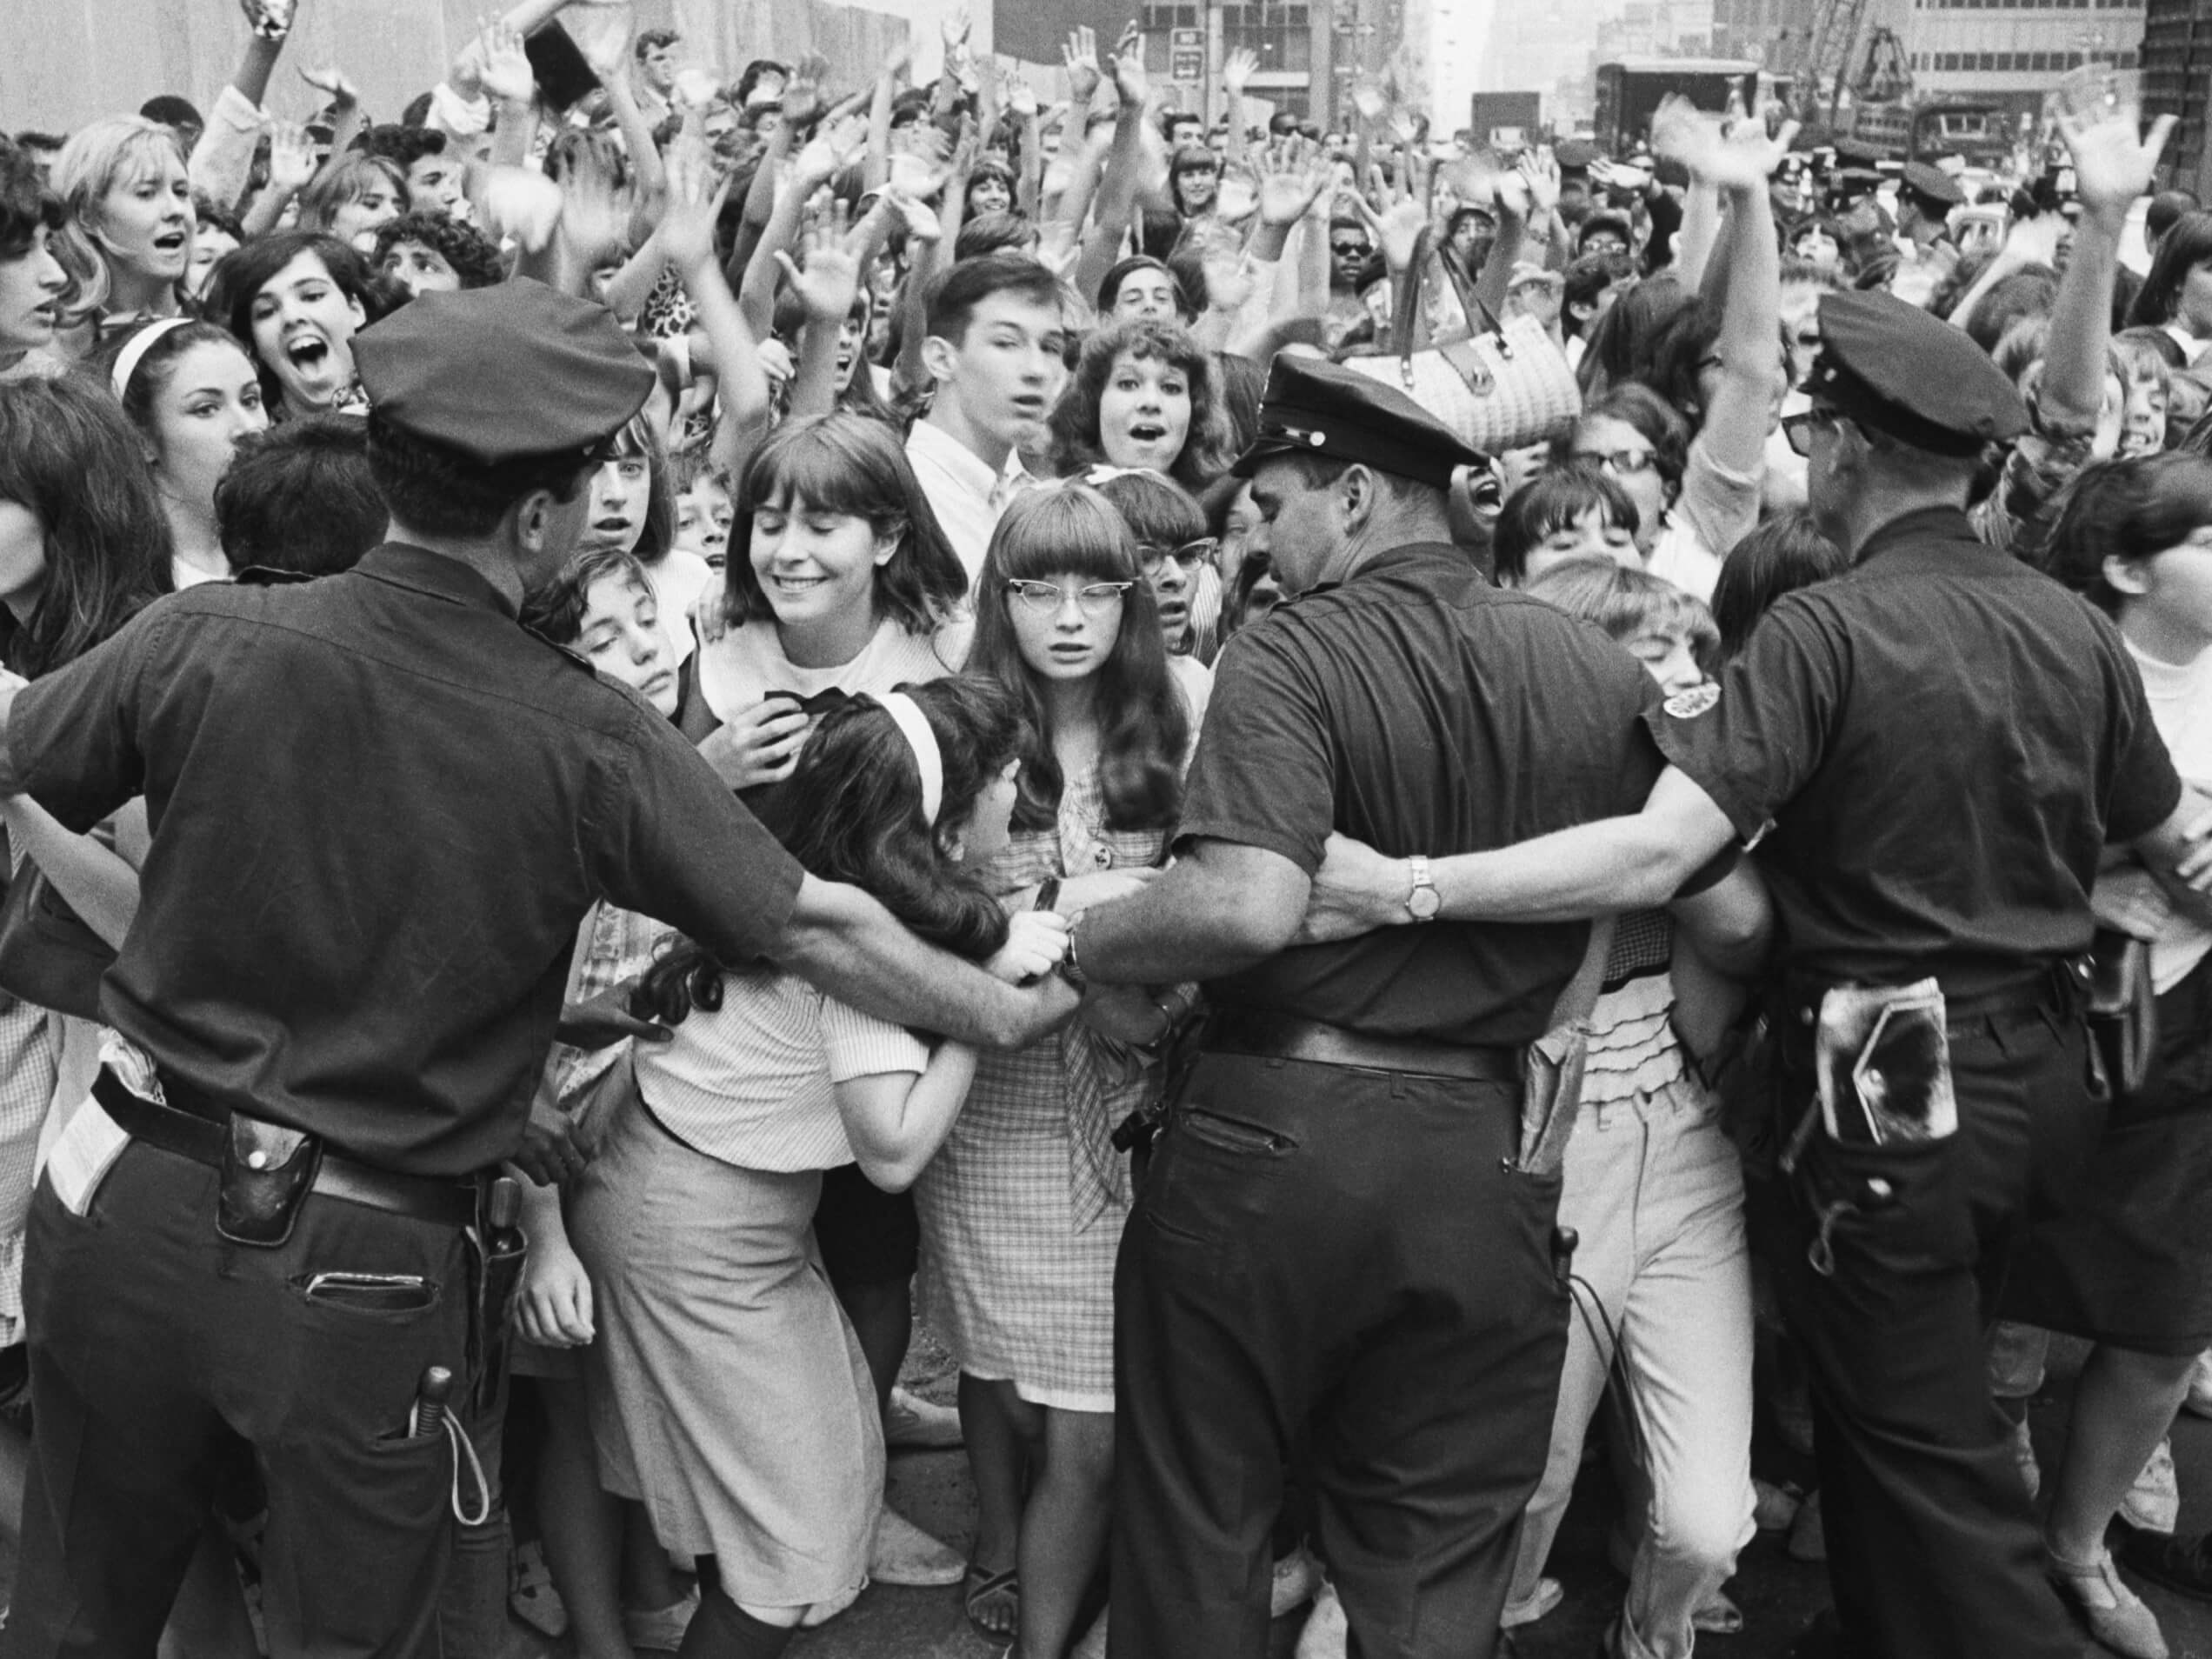 John Lennon a dit 1 ligne dans "Revolution" des Beatles a commenté la police